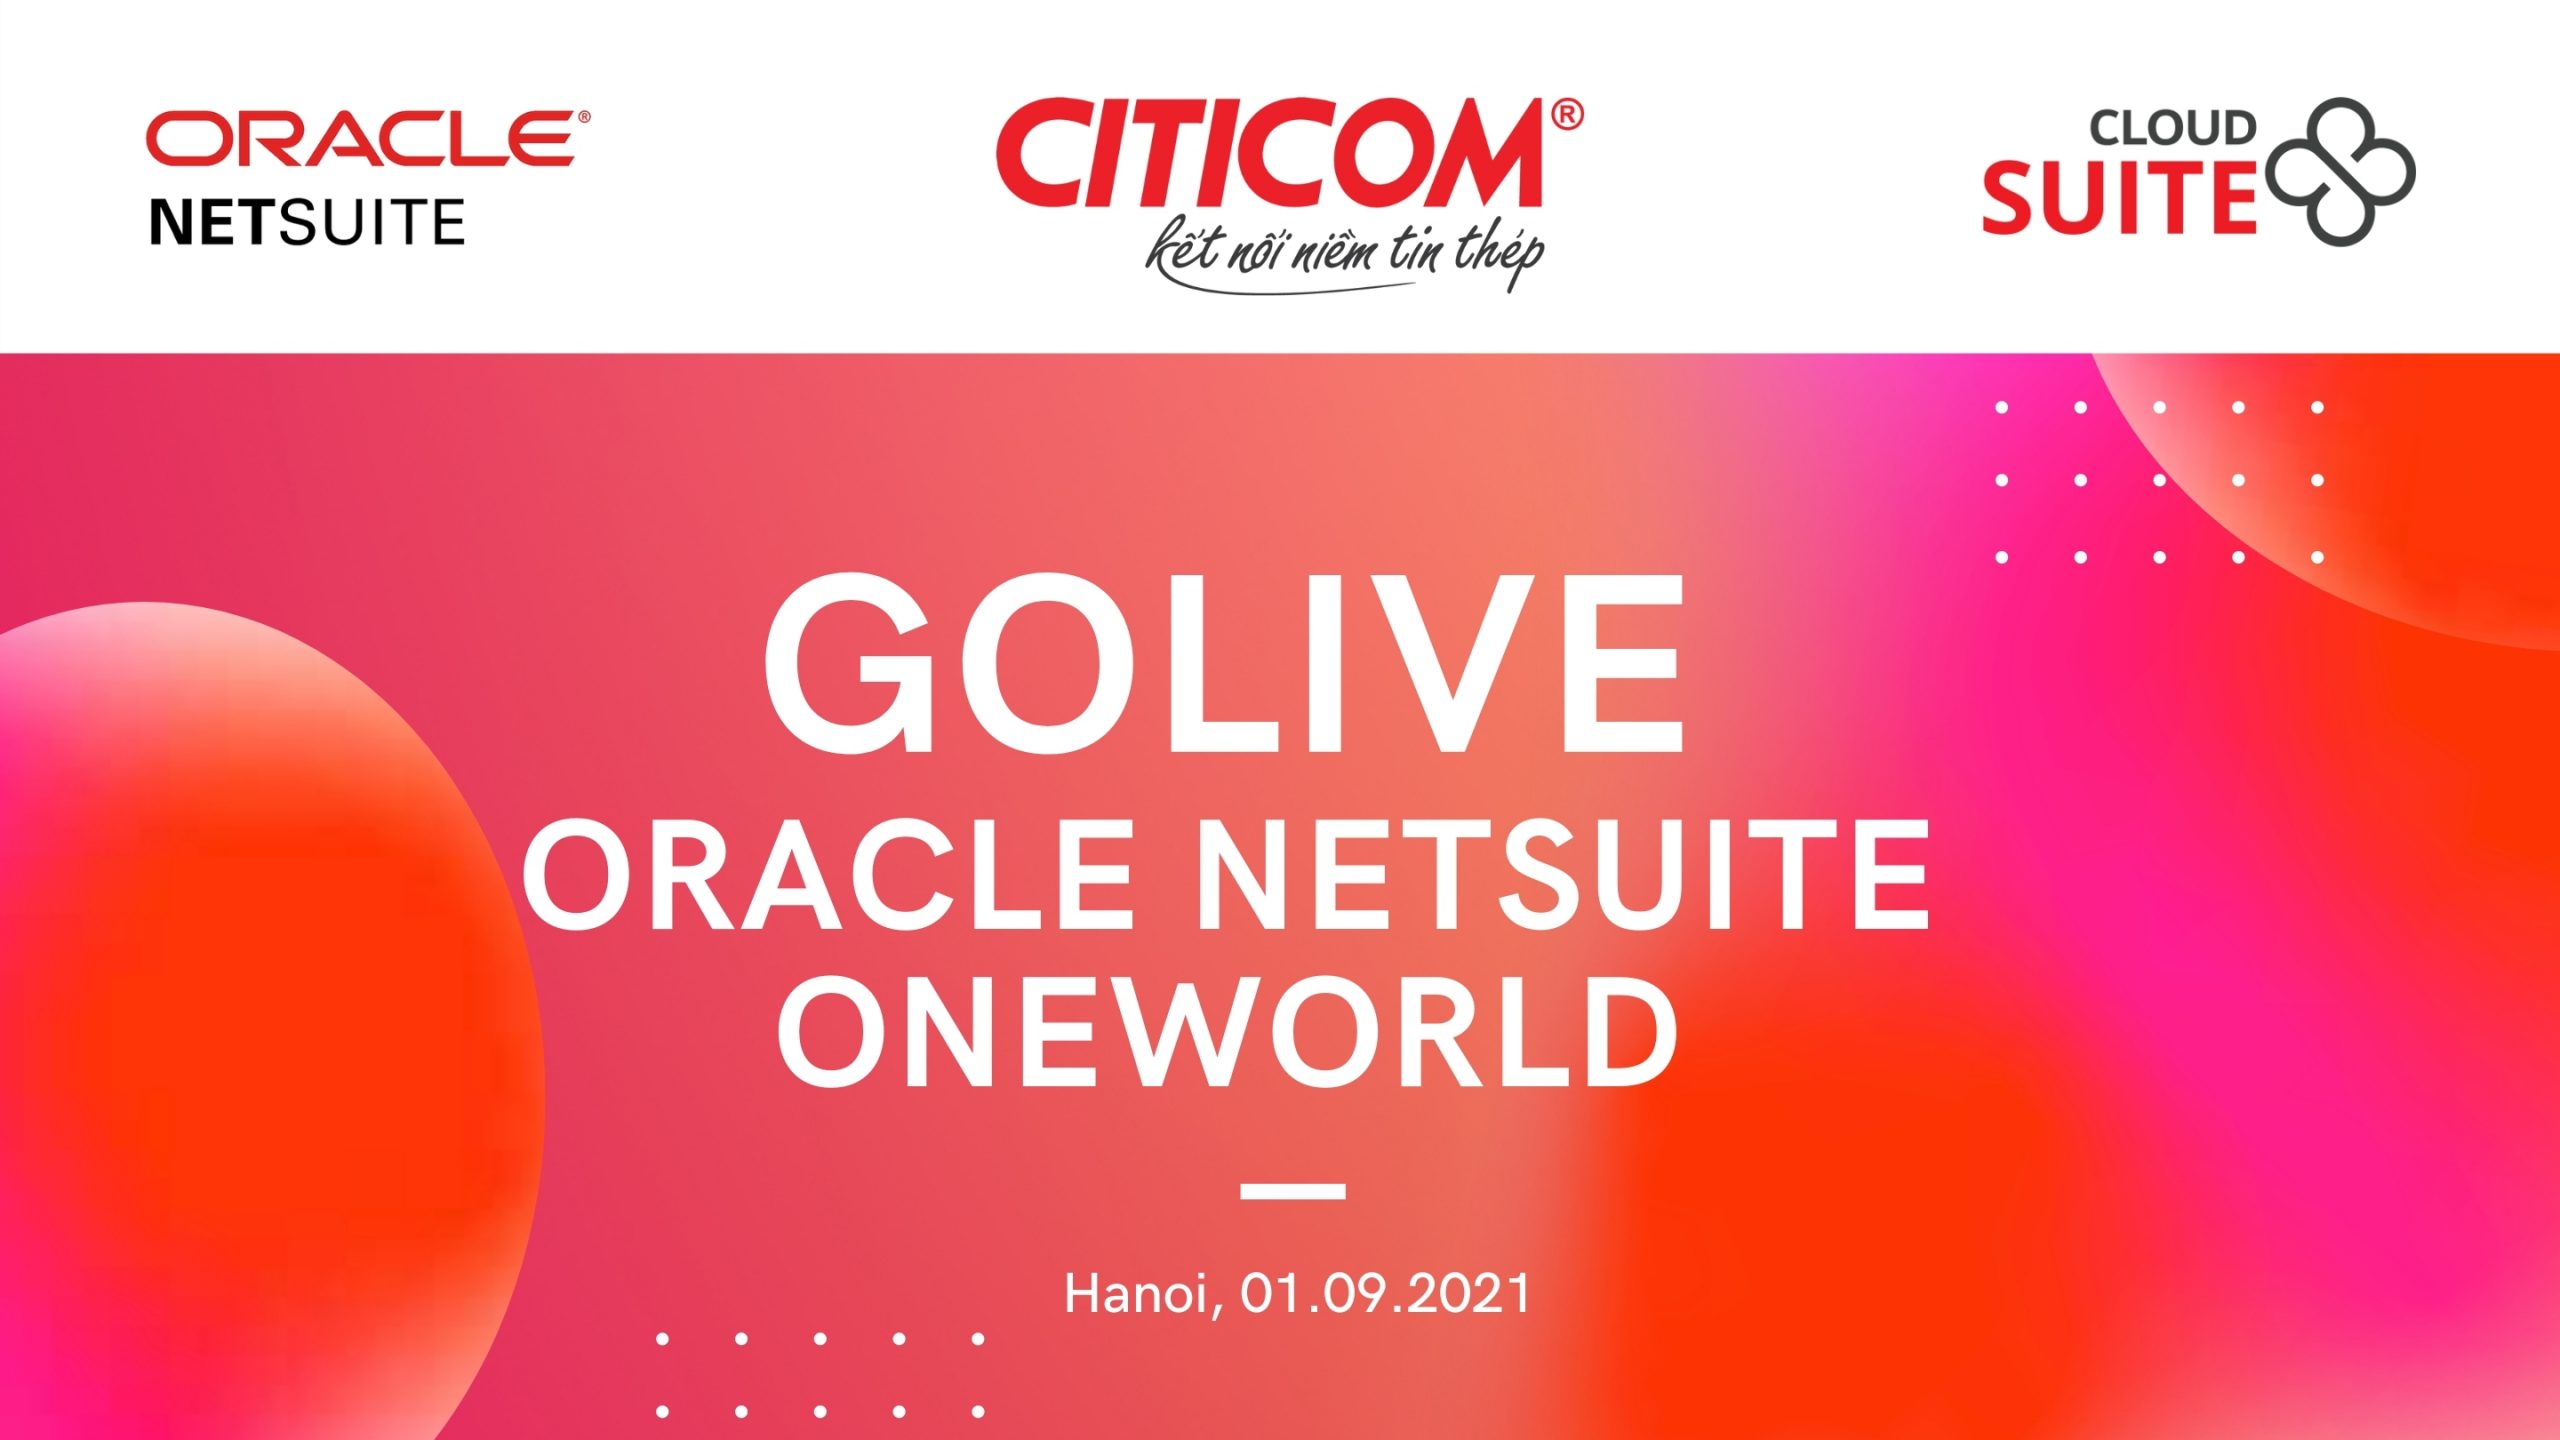 Citicom Golive hợp nhất 2 công ty thành viên lên hệ thống Oracle NetSuite ERP